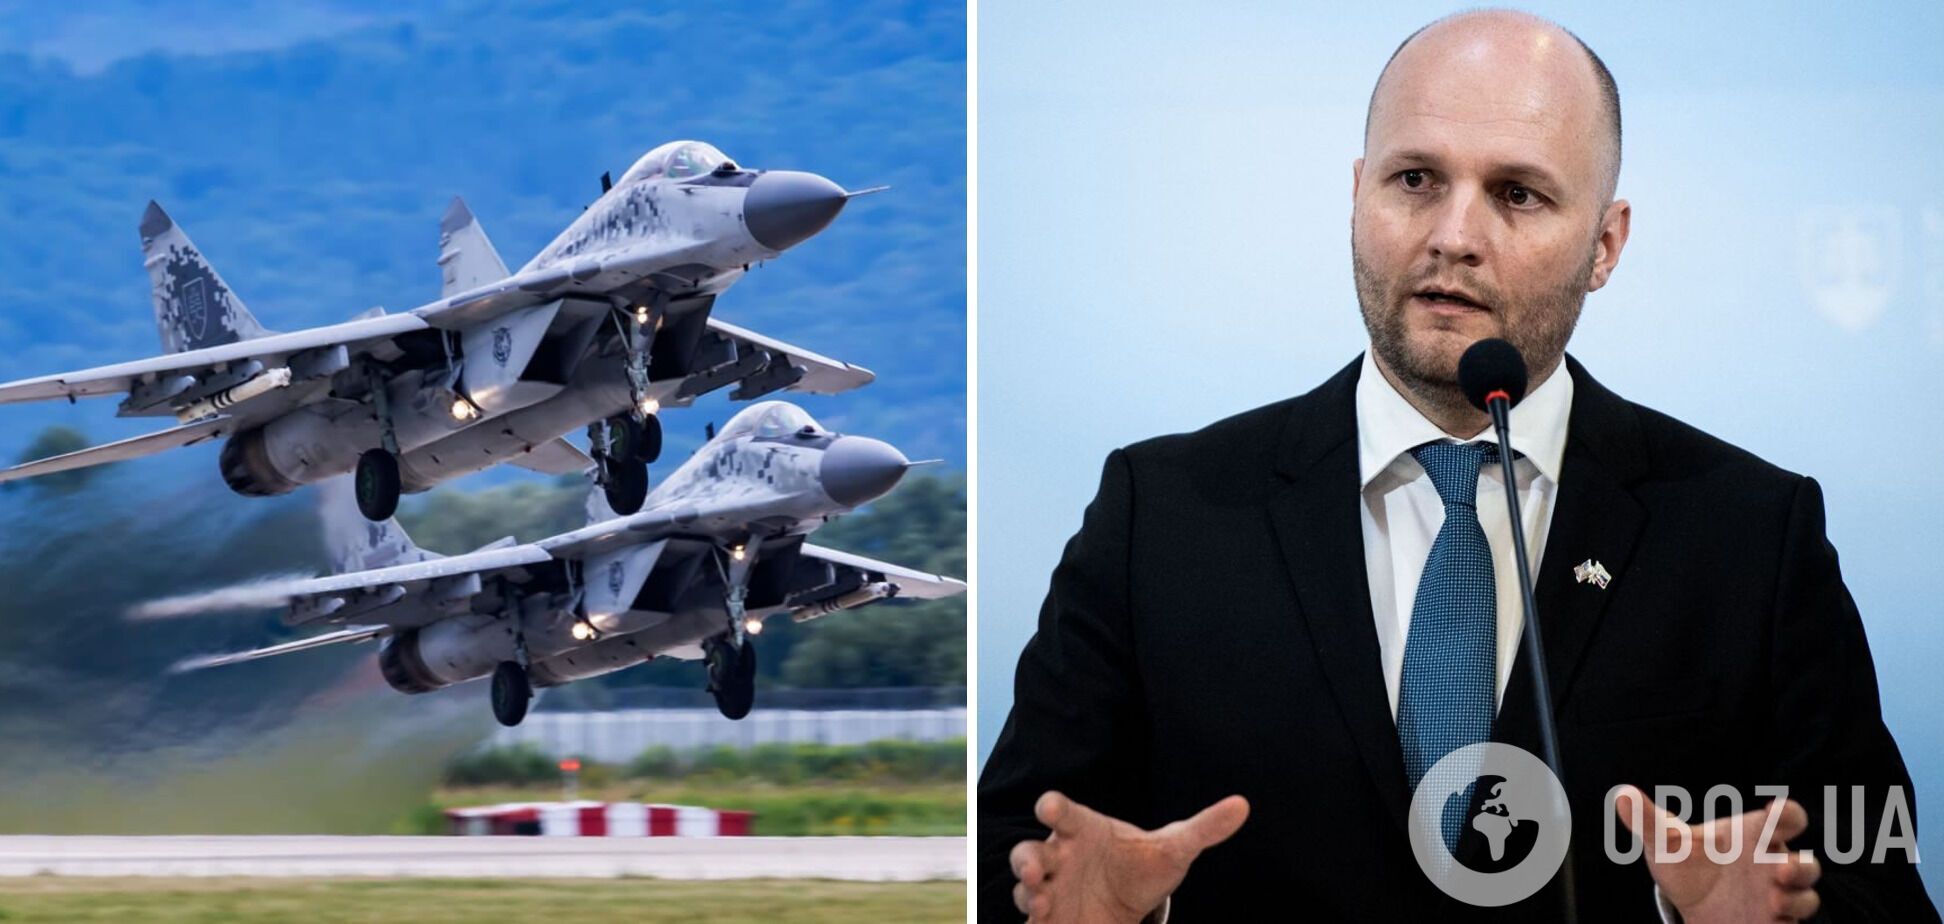 Российские специалисты в Словакии могли умышленно повредить МиГ-29, которые теперь решили передать Украине